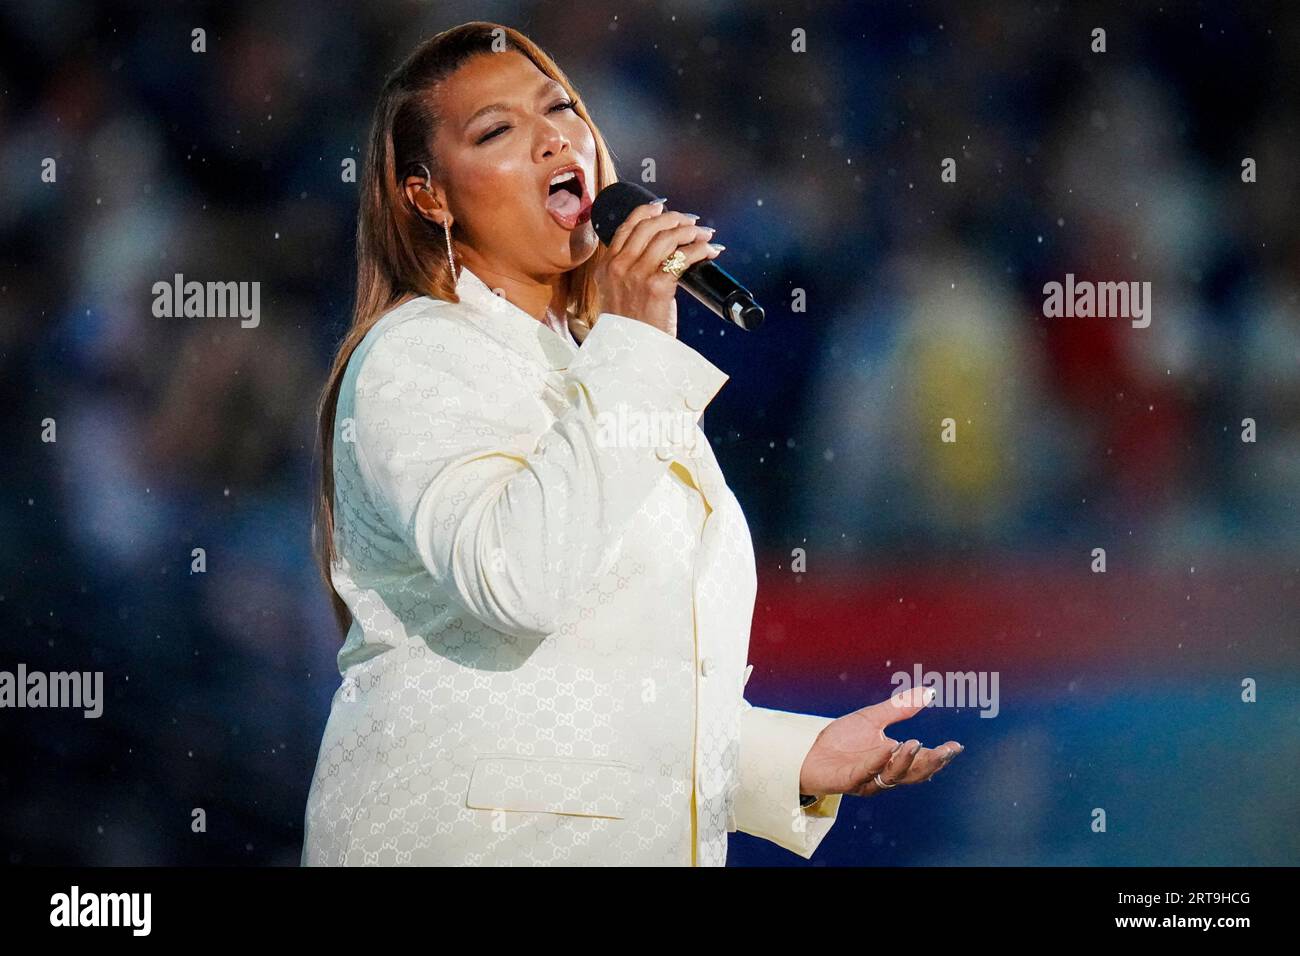 Female national anthem singer Stock Photo - Alamy